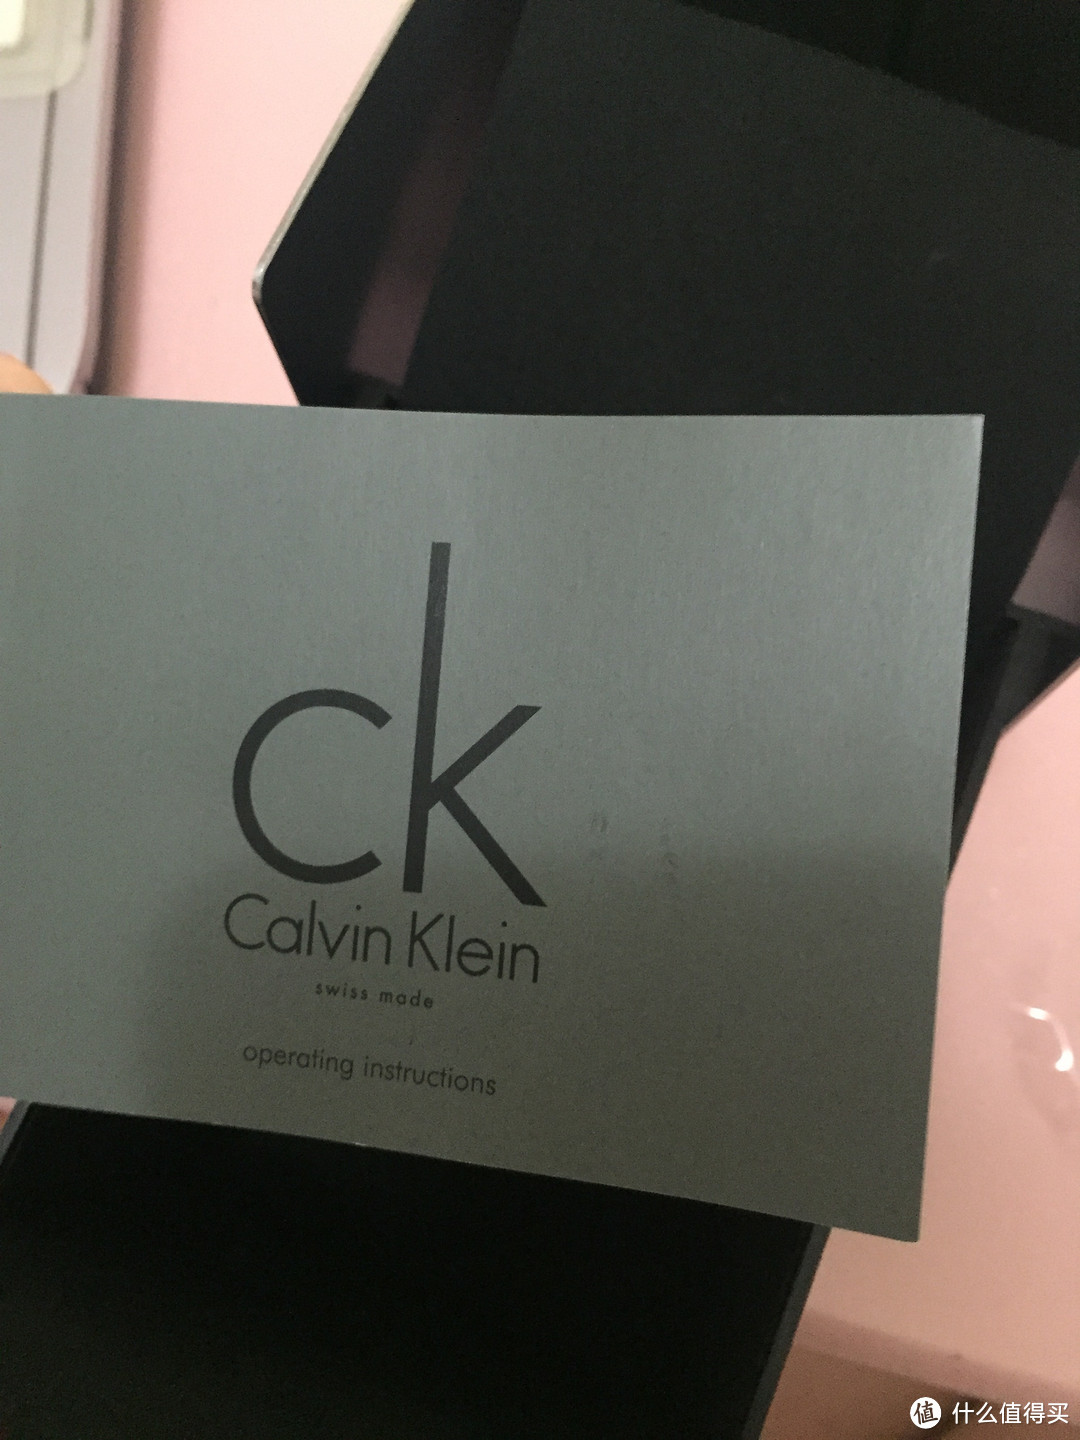 送给自己的礼物：Calvin Klein AIR系列 K1N22102 女士时装腕表